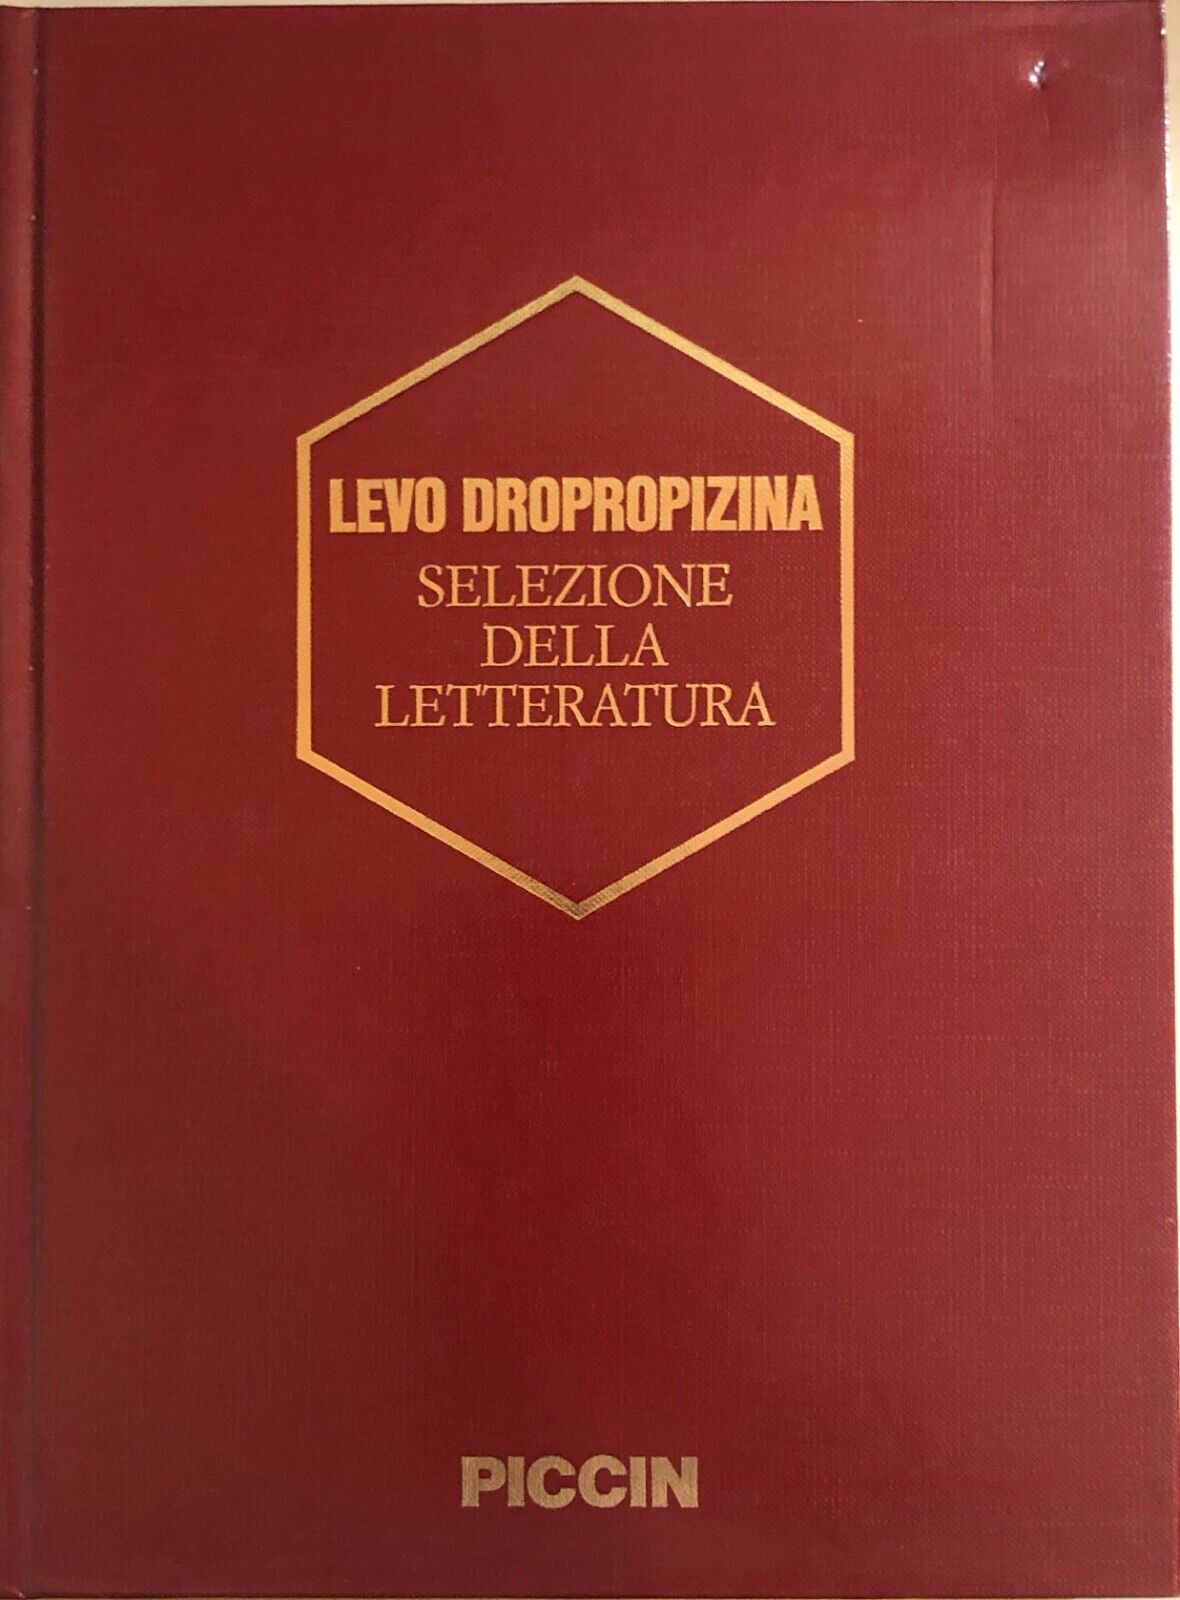 Levo Dropopizina di Aa.vv., 1990, Piccin